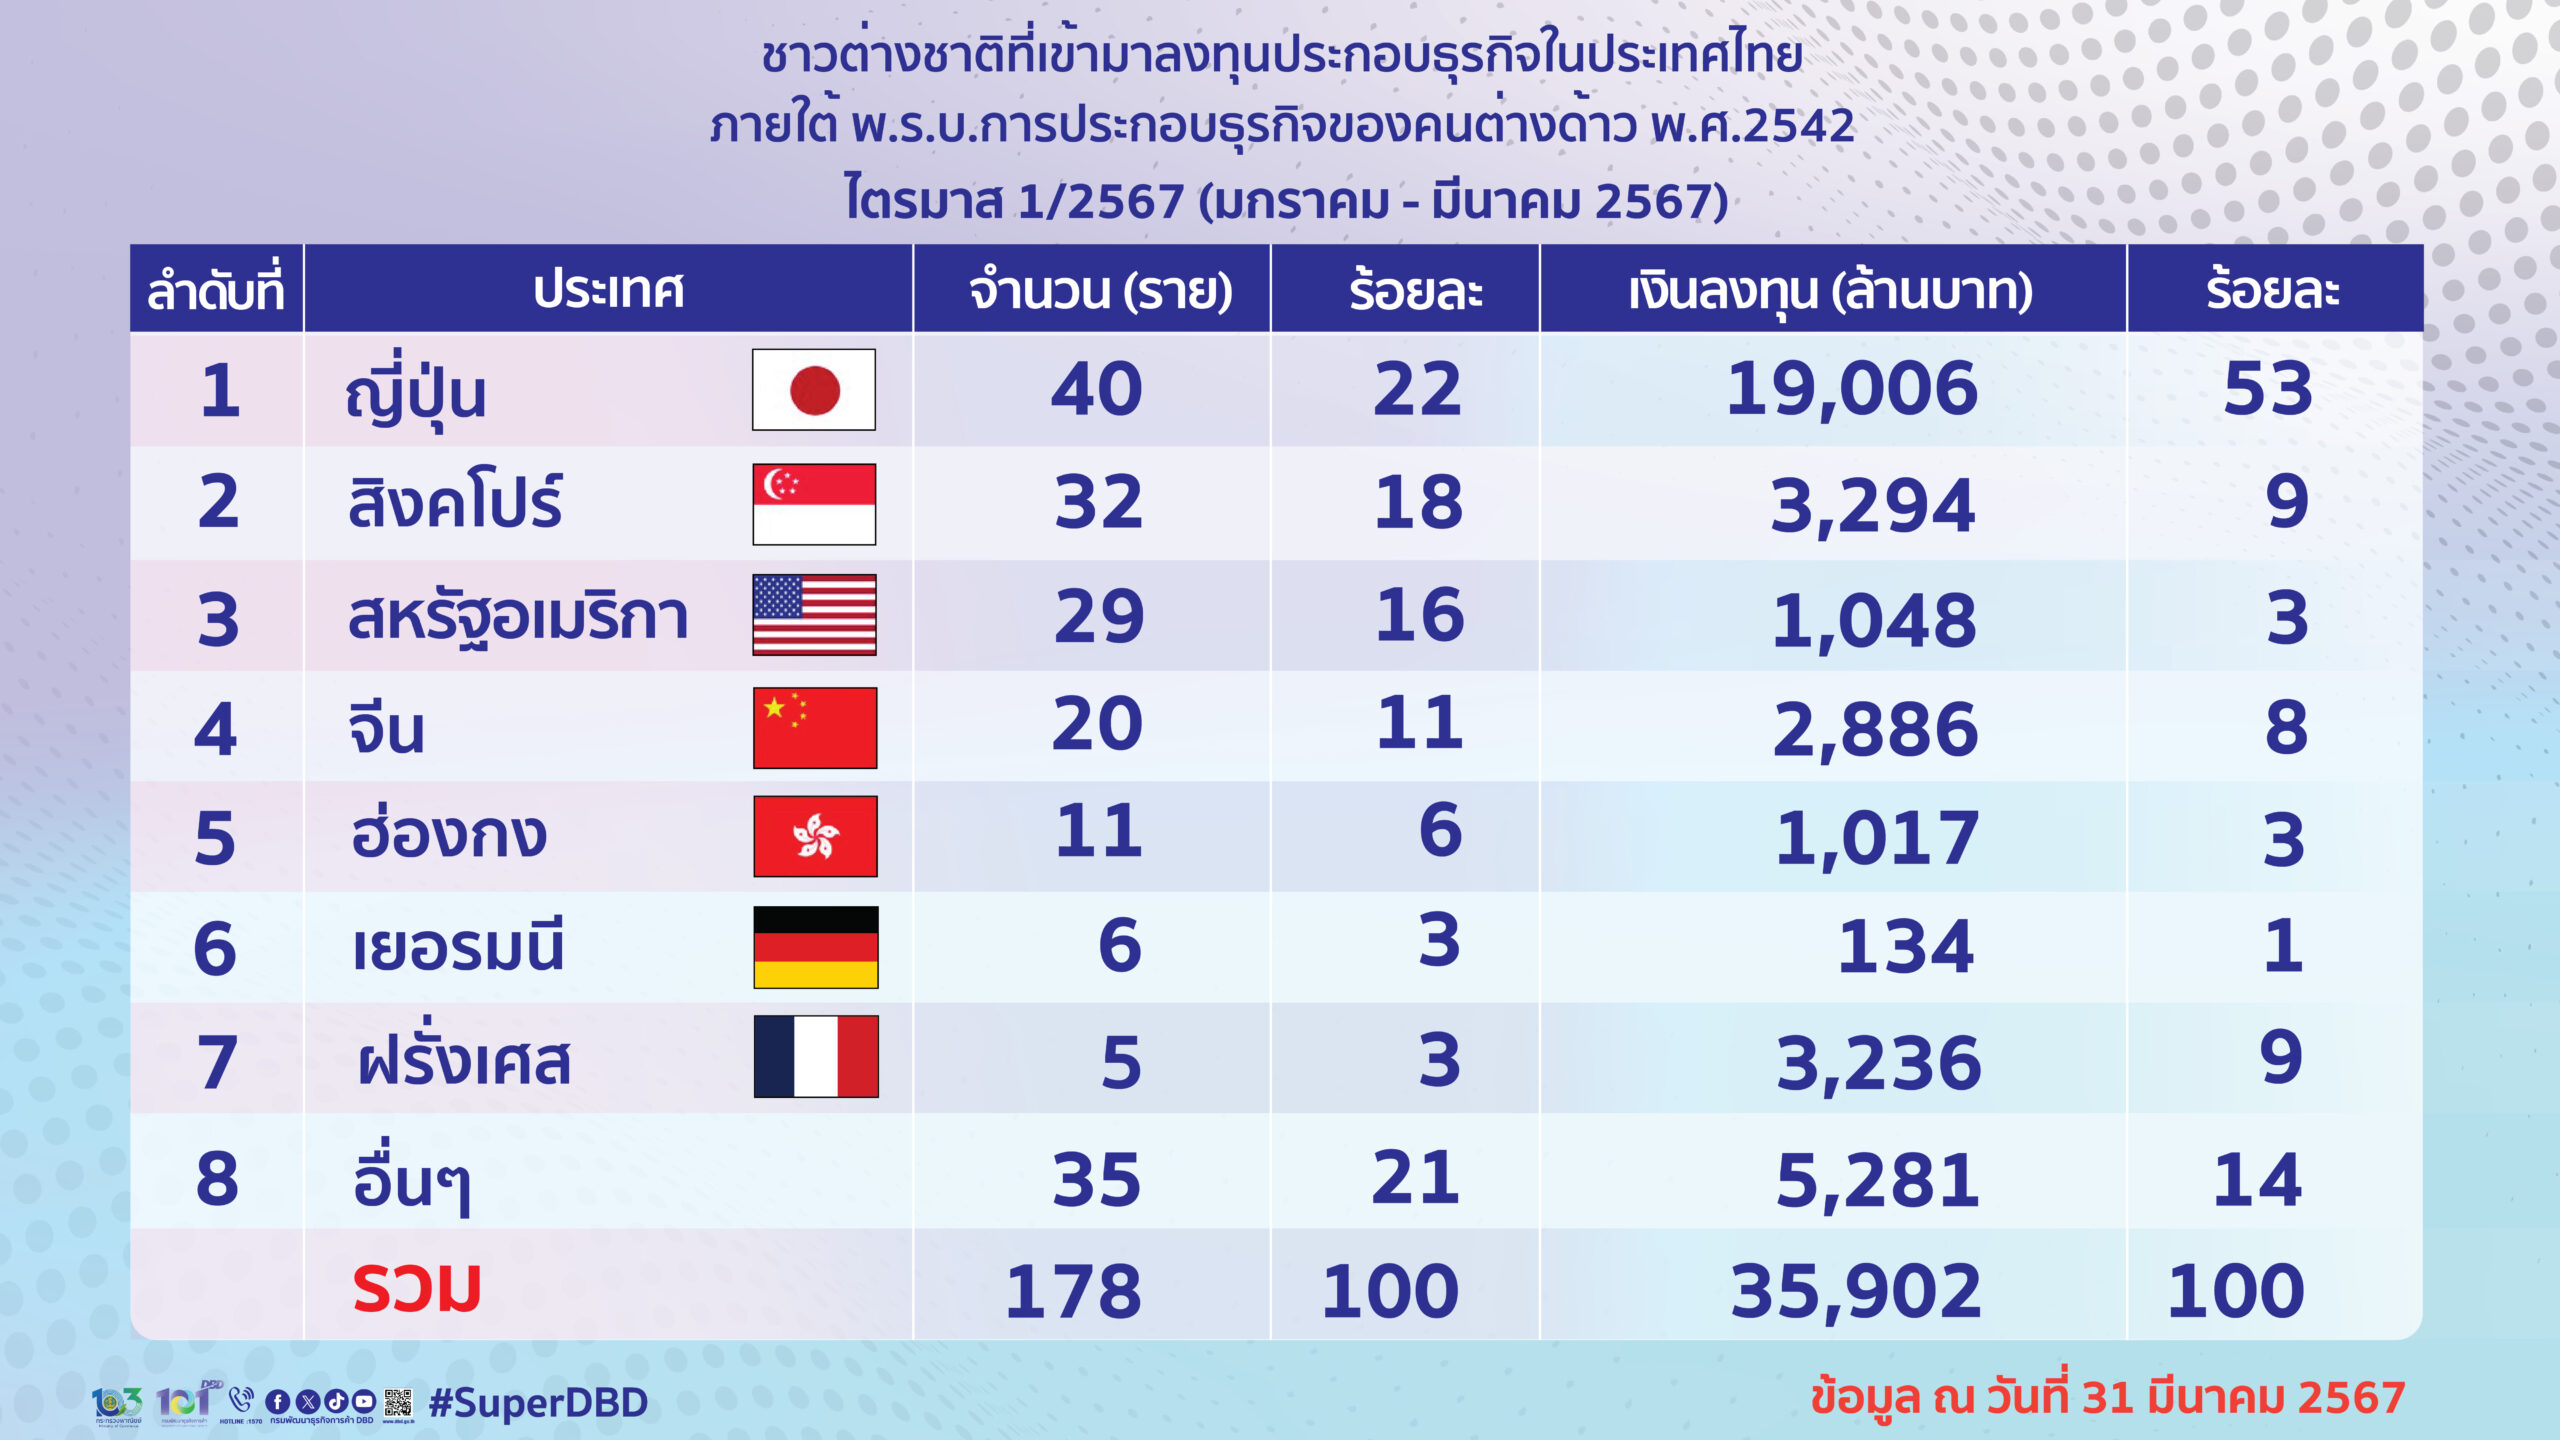 ญี่ปุ่นครองแชมป์ลงทุนในไทยอันดับ 1 ไตรมาสแรกปี 2567 เฉียด 2 หมื่นล้าน